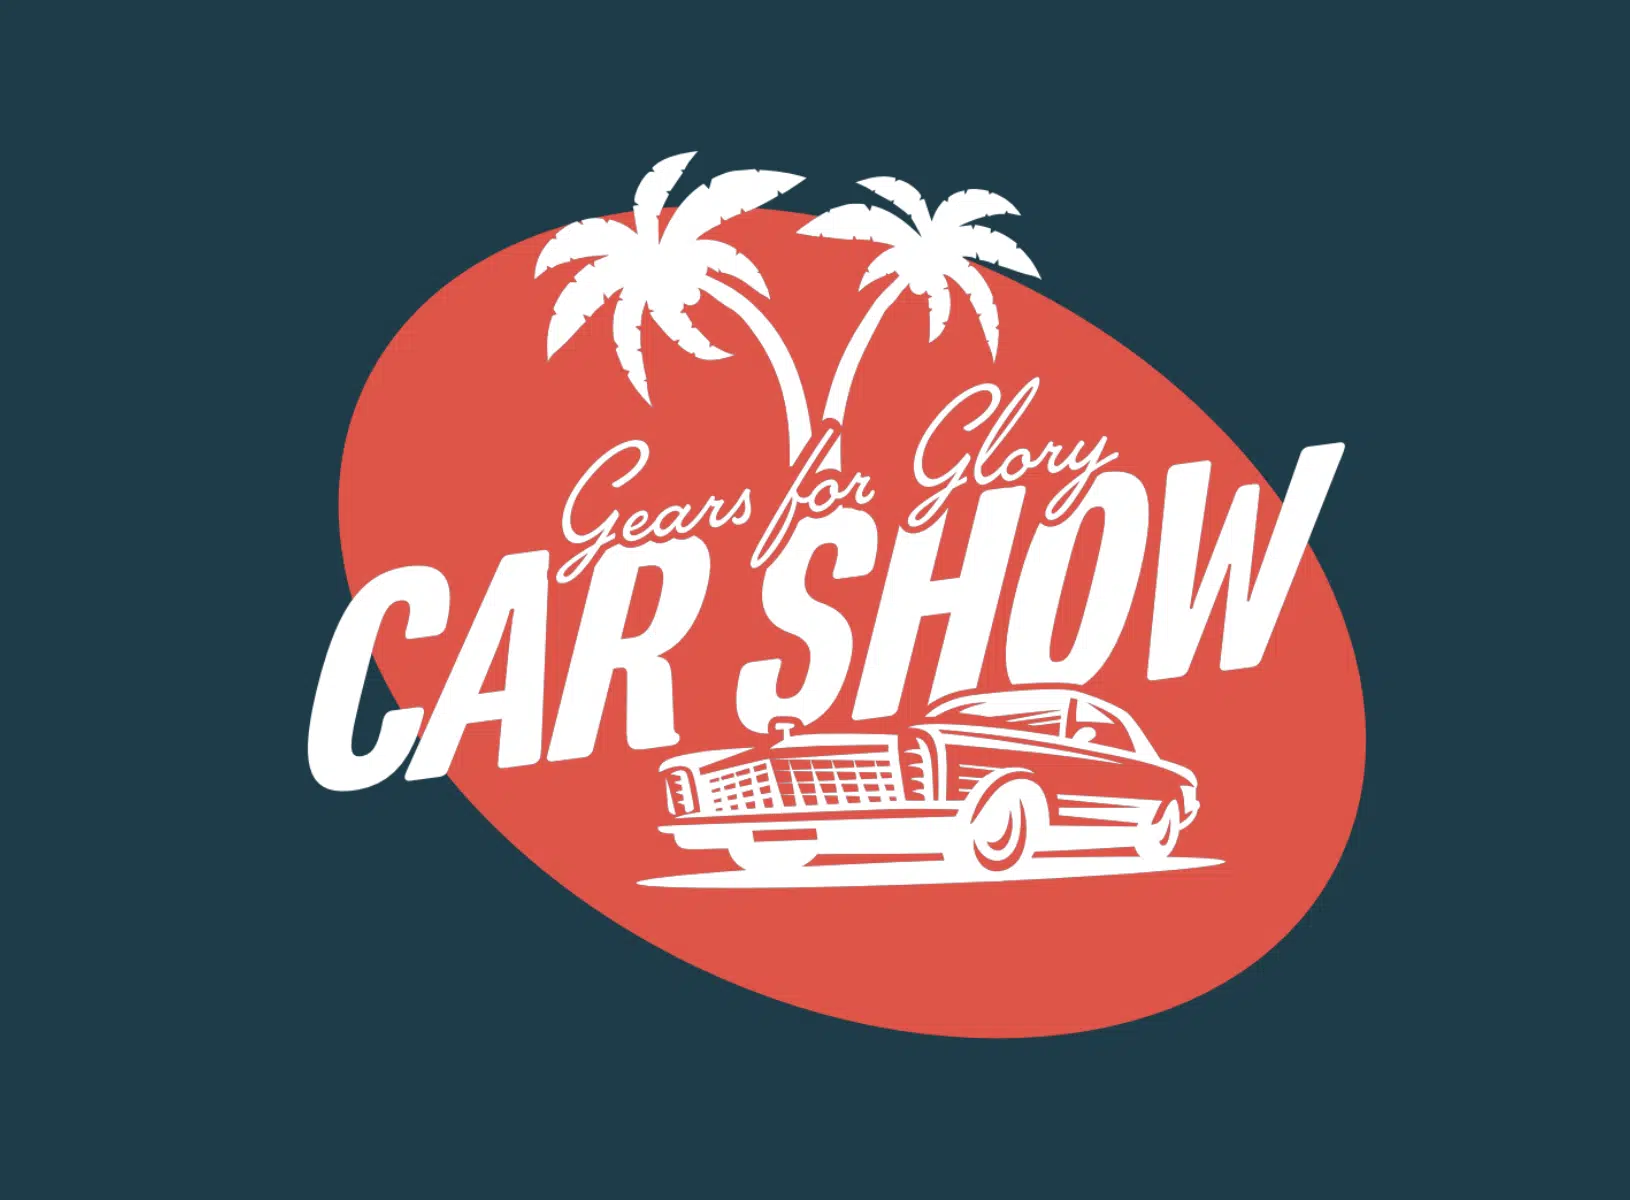 classic car show logo